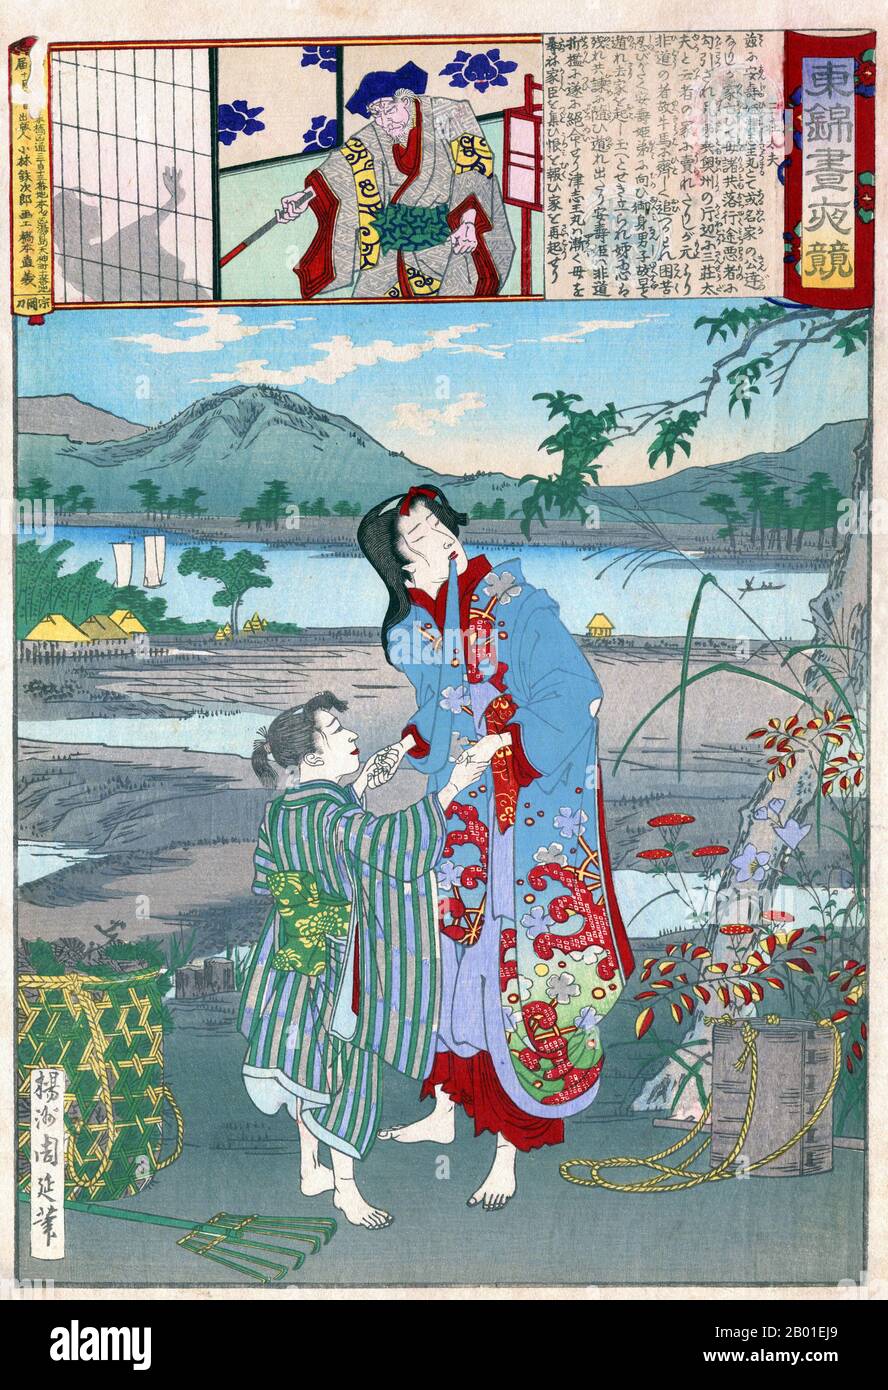 Giappone: Yasu-hime e Zushiomaru venduti in schiavitù. Stampa in blocco di legno ukiyo-e di Yoshu Chikanobu (1838-1912), 1886. Sansho Daiyu vendette in schiavitù Yasu-hime e Zushiomaru, figlia e figlio (qui mostrato) del governatore provinciale Iwaka Masauji, che era stato rovesciato ed esiliato. Il fedele fermo di Iwaka Tatebe Kanamenosuke tentò di salvare i bambini, ma fu egli stesso catturato e condannato a morte, per essere decapitato all'alba. Osan, figlia di Sansho, si trasformò in un faraone quando il sole si alzò il giorno dell'esecuzione e si masticò le corde del prigioniero. Foto Stock